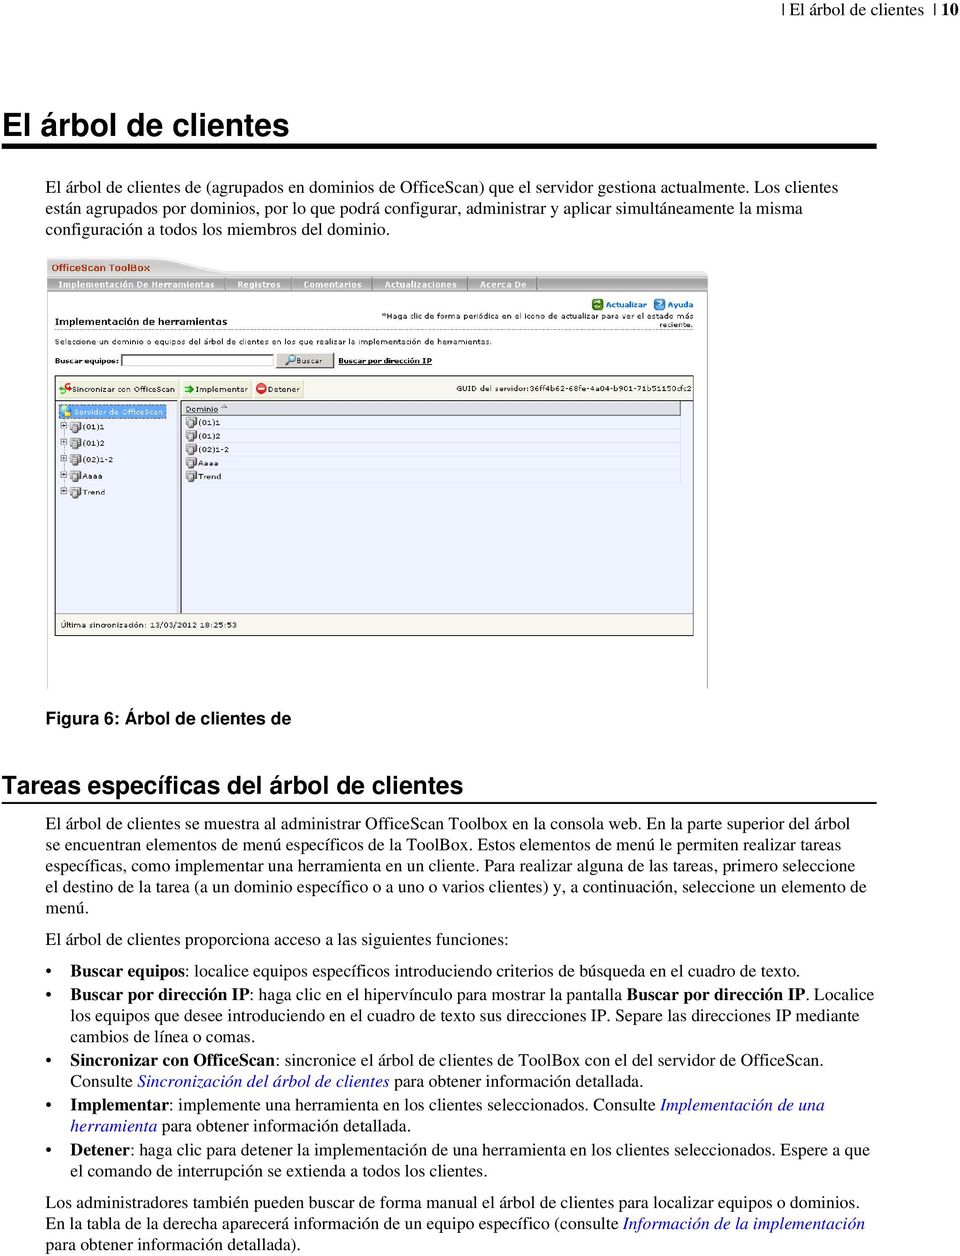 Figura 6: Árbol de clientes de Tareas específicas del árbol de clientes El árbol de clientes se muestra al administrar OfficeScan Toolbox en la consola web.